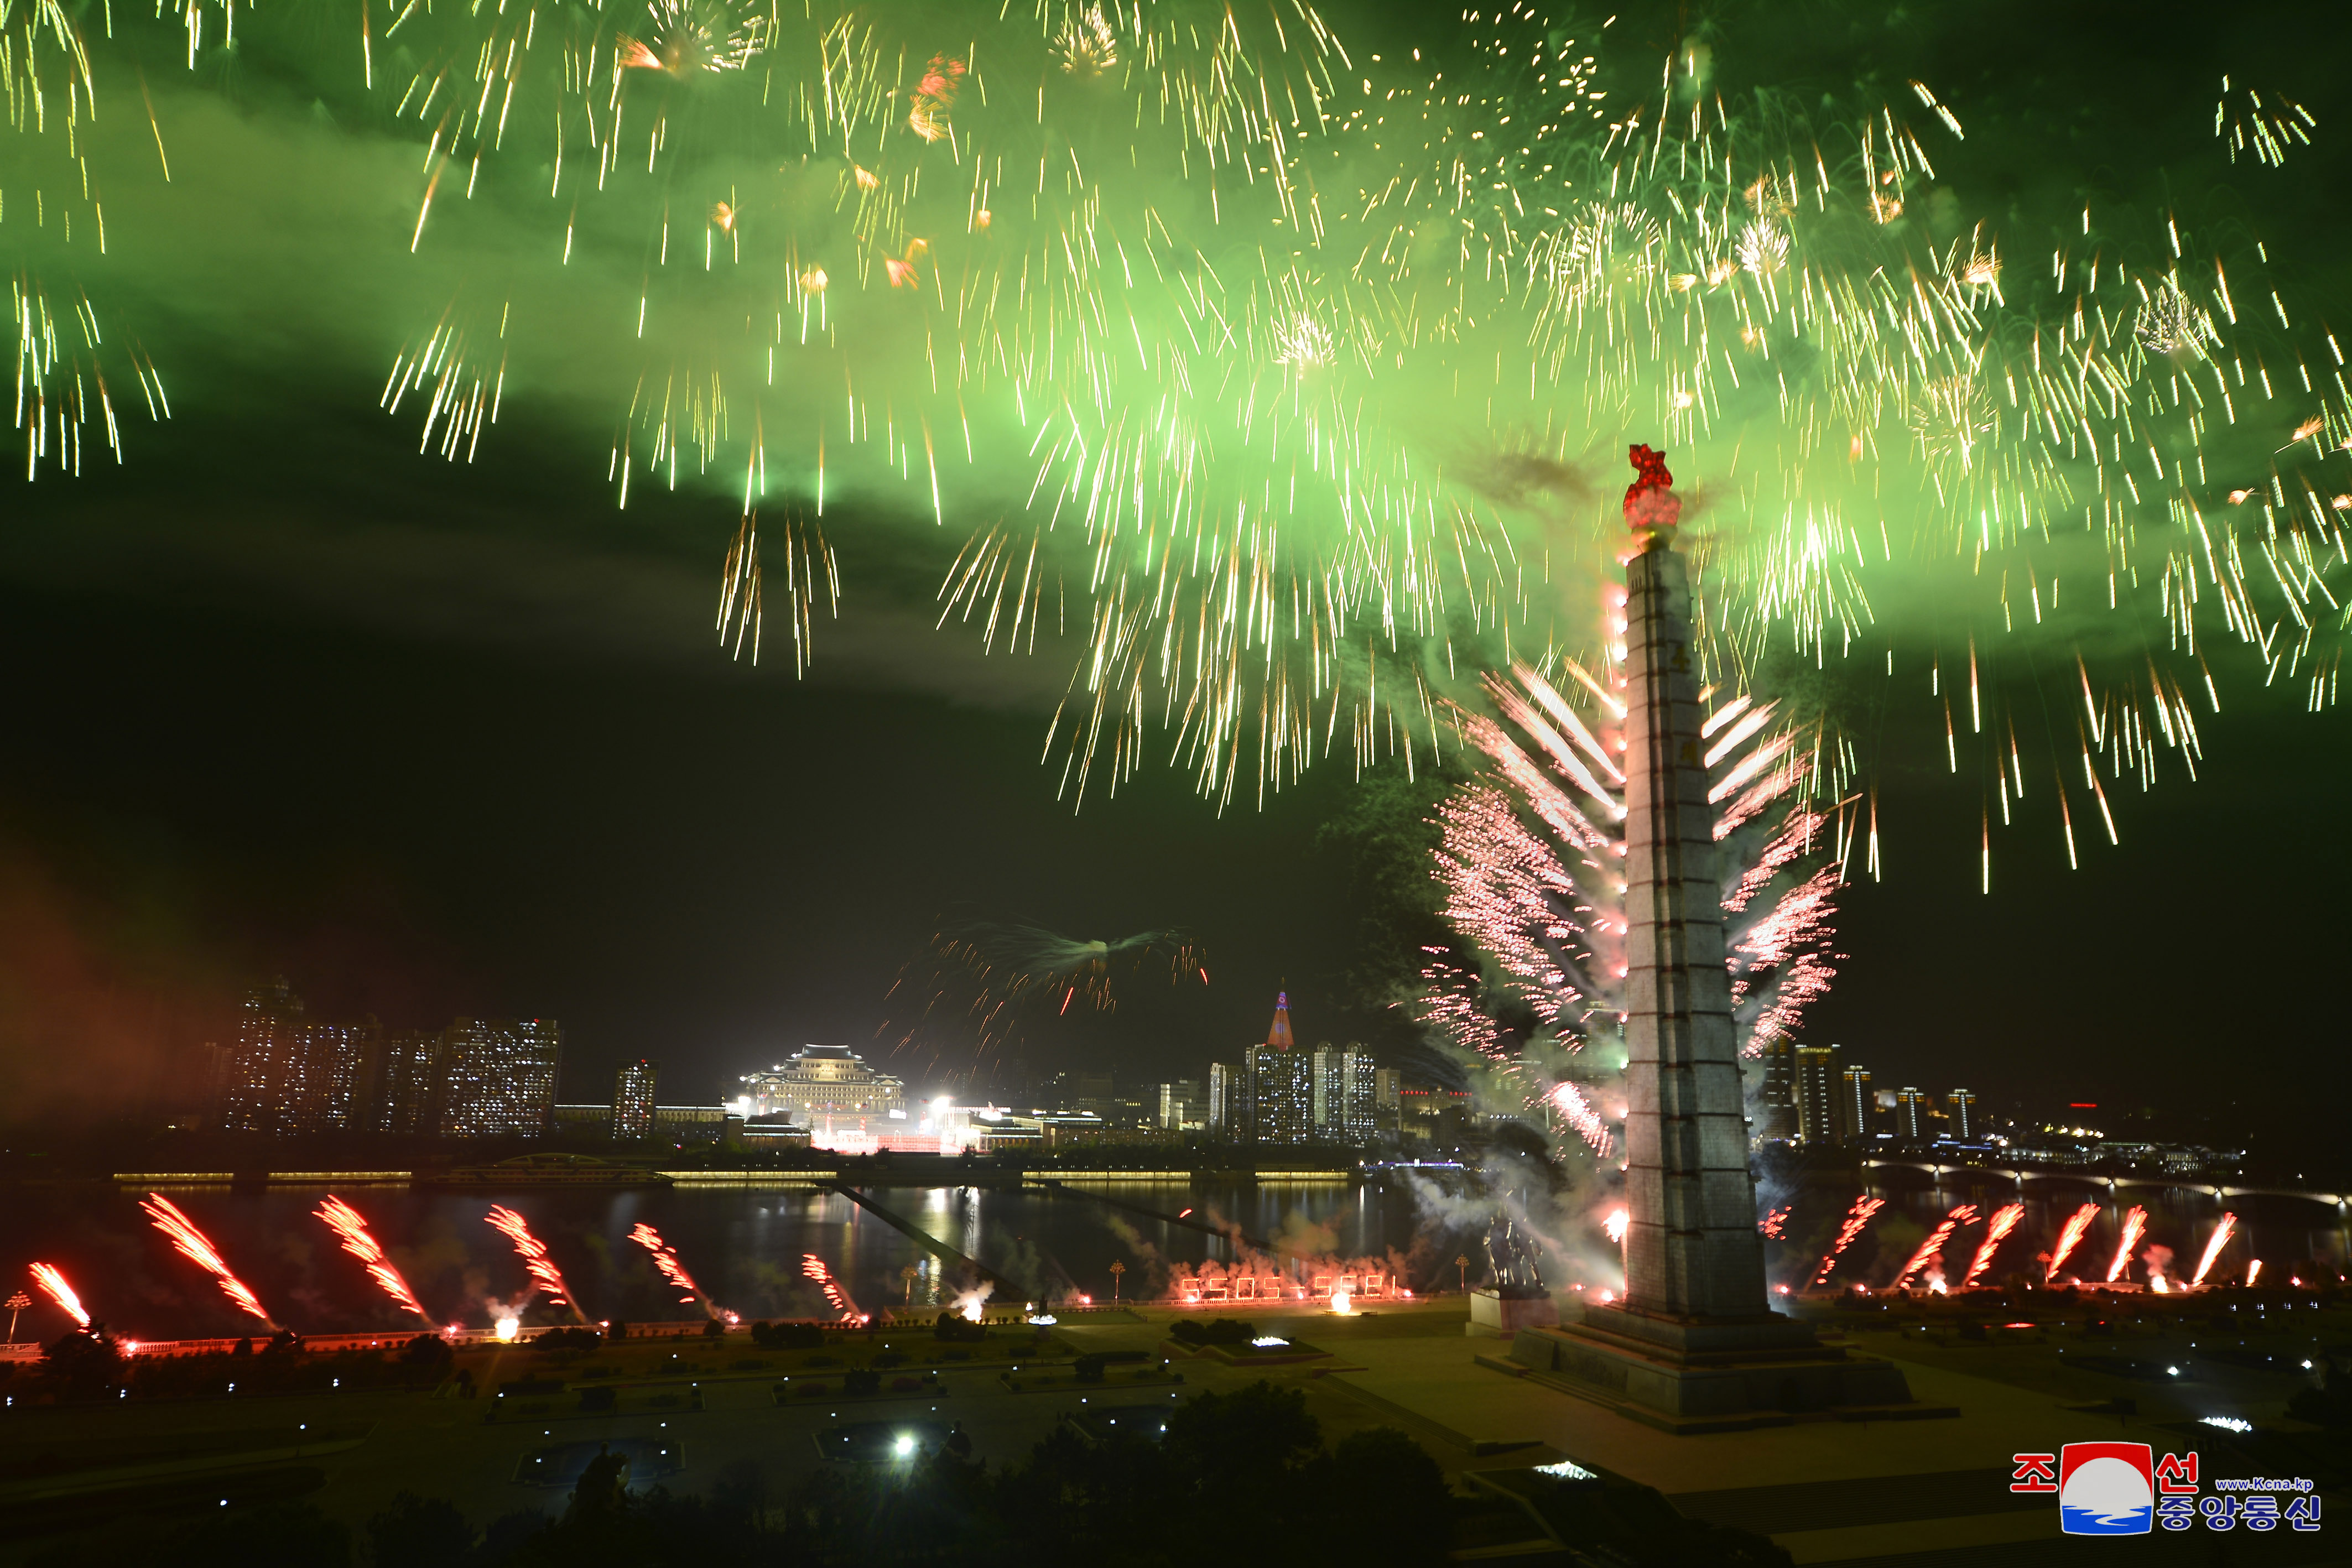 주체사상탑 주위로 화려한 불꽃놀이가 펼쳐지는 모습 (사진 출처 : 연합뉴스)